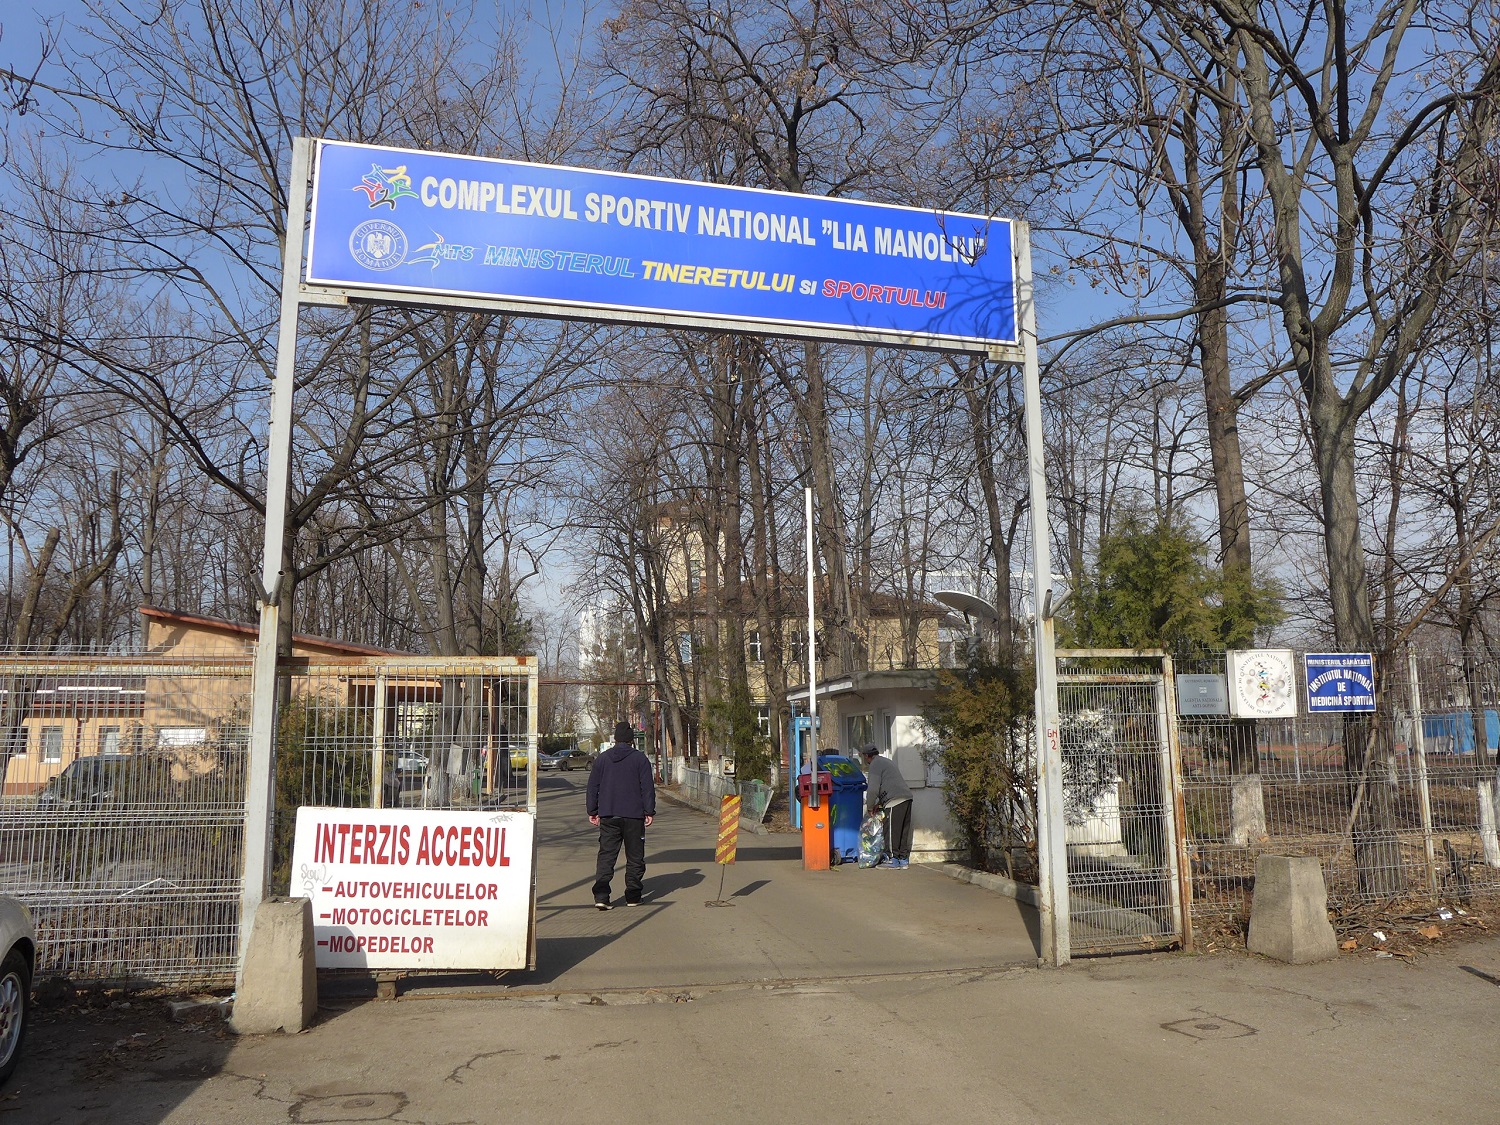 L’Institut se trouve dans le complexe sportif national Lia Manoliu, qui regroupe plusieurs infrastructures sportives, des administrations, des sièges de fédérations sportives... On y trouve aussi l’Arène nationale, le grand stade de Bucarest.